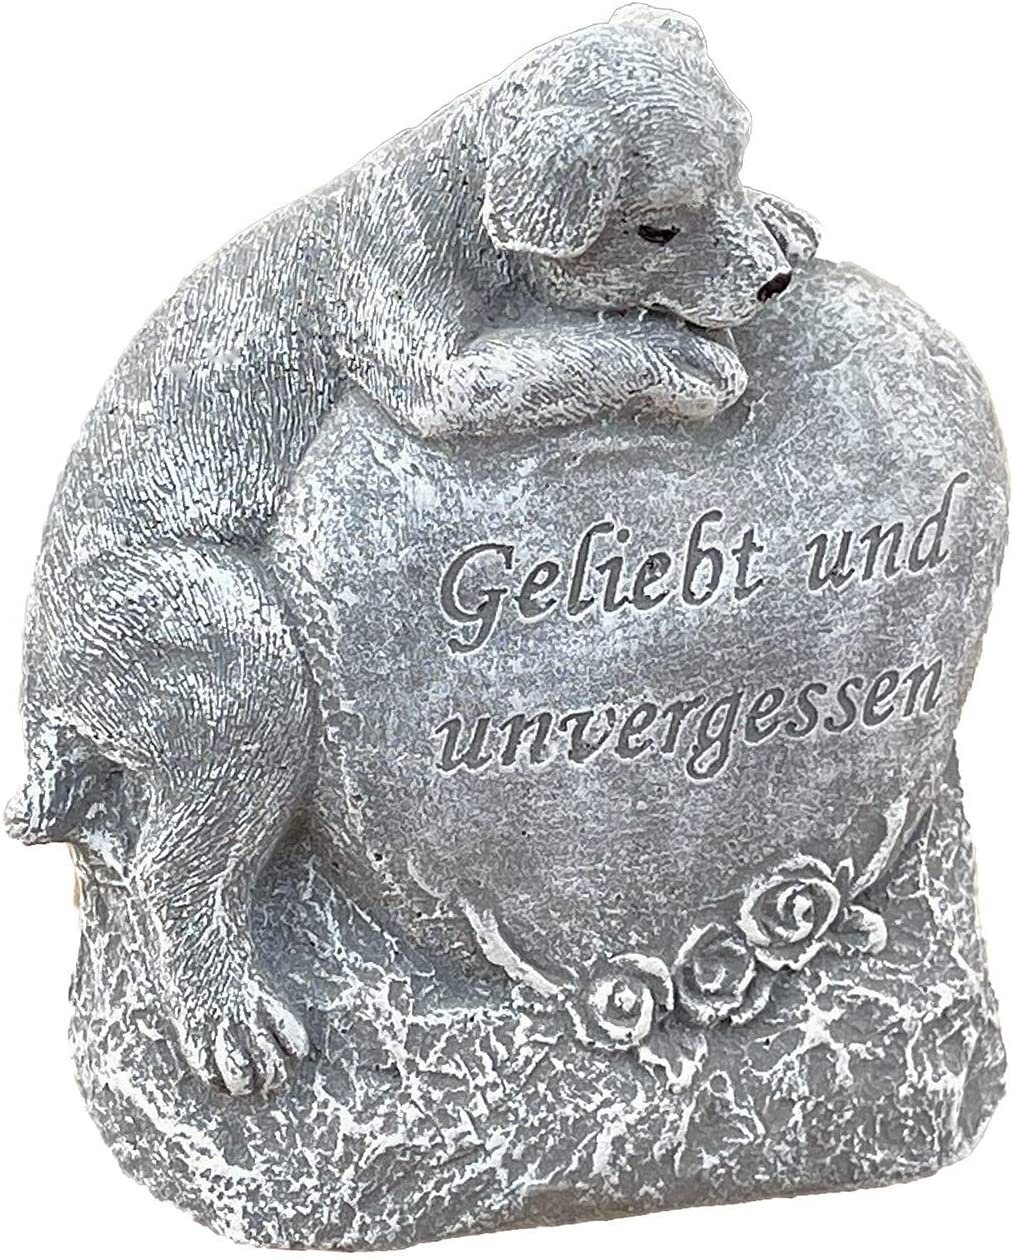 Stone and Style Gartenfigur Steinfigur Grabschmuck Hund Herz Geliebt und Unvergessen